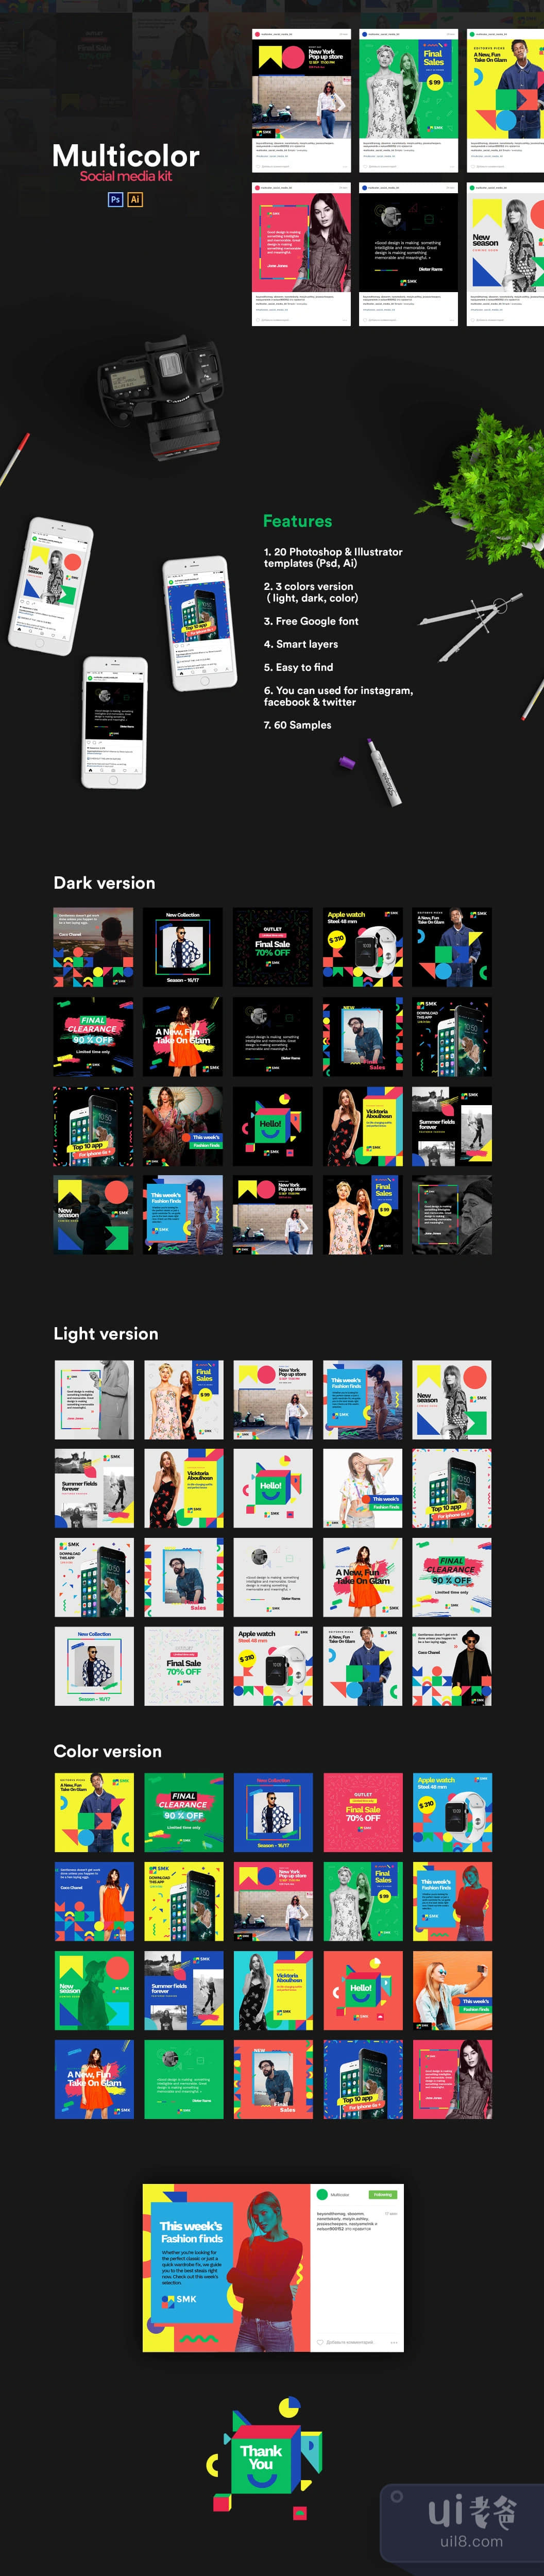 多色社交媒体套件 (Multicolor Social Media Kit)插图1